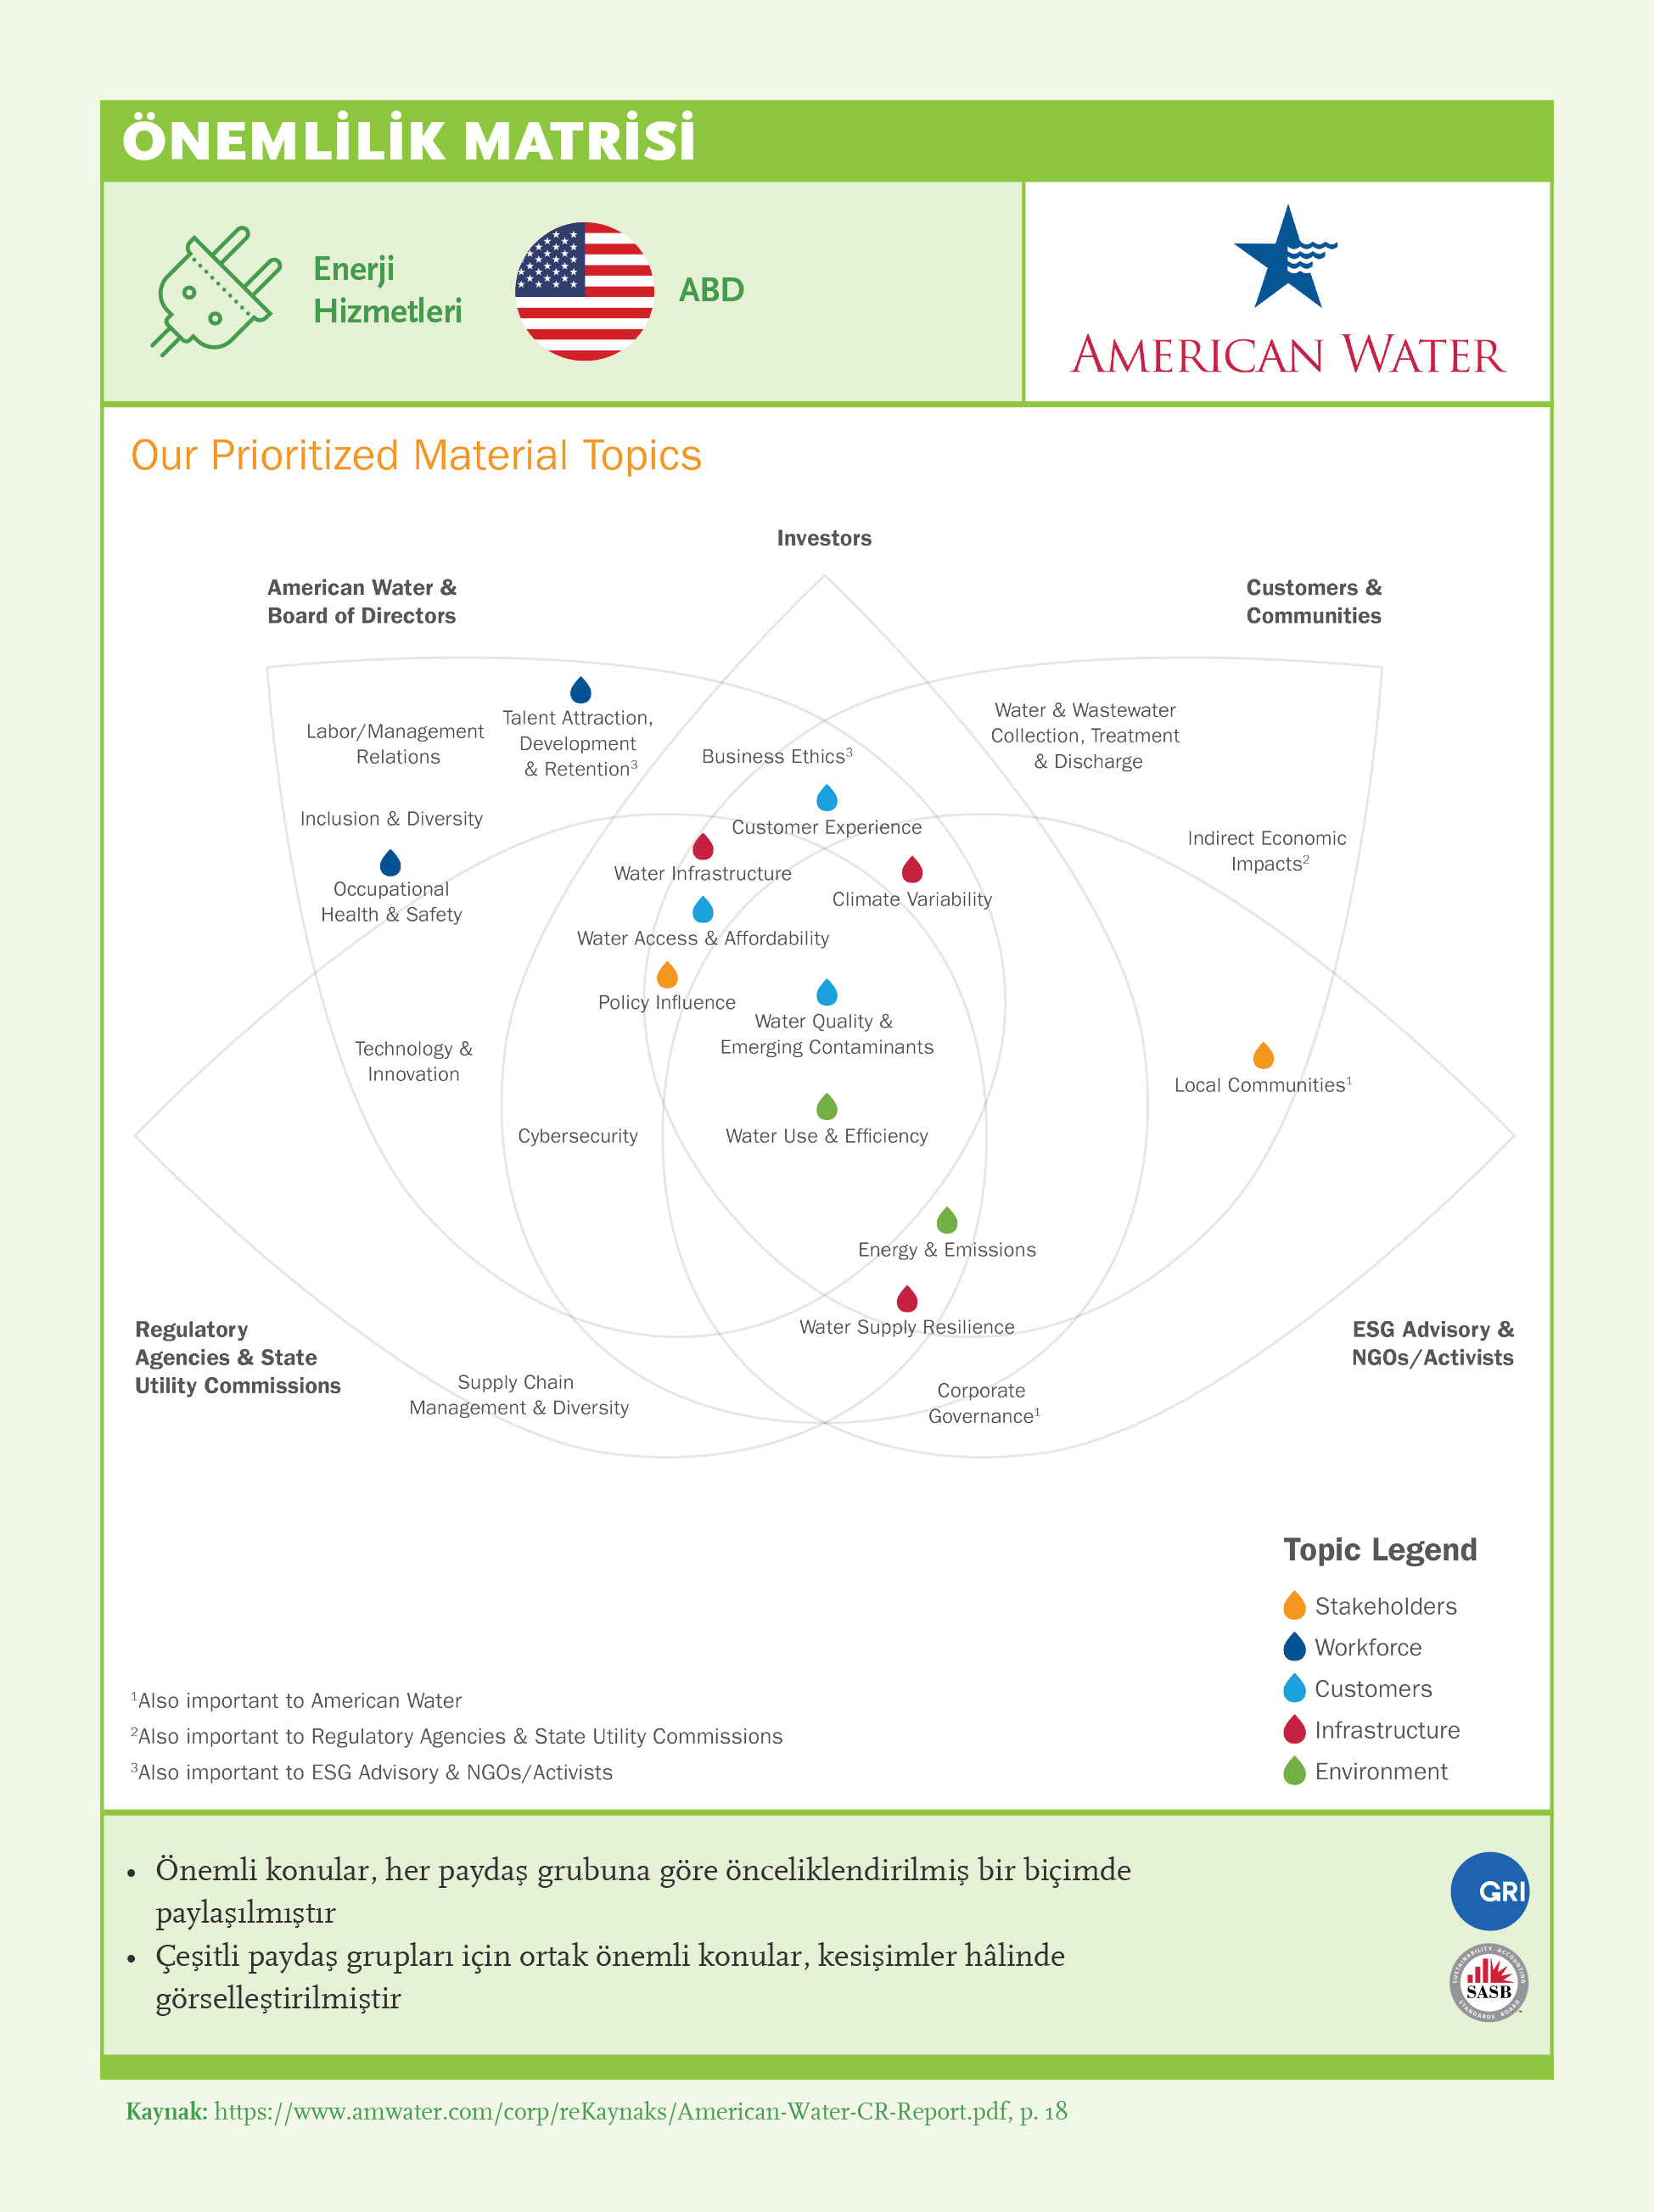 Önemlilik Matrisi: American Water Works